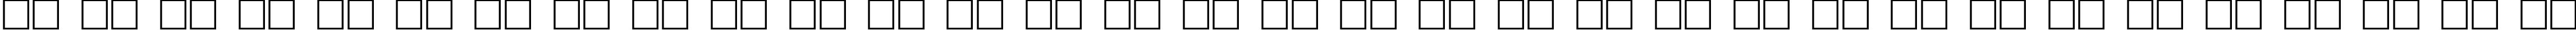 Пример написания русского алфавита шрифтом FnT_BasicShapes1